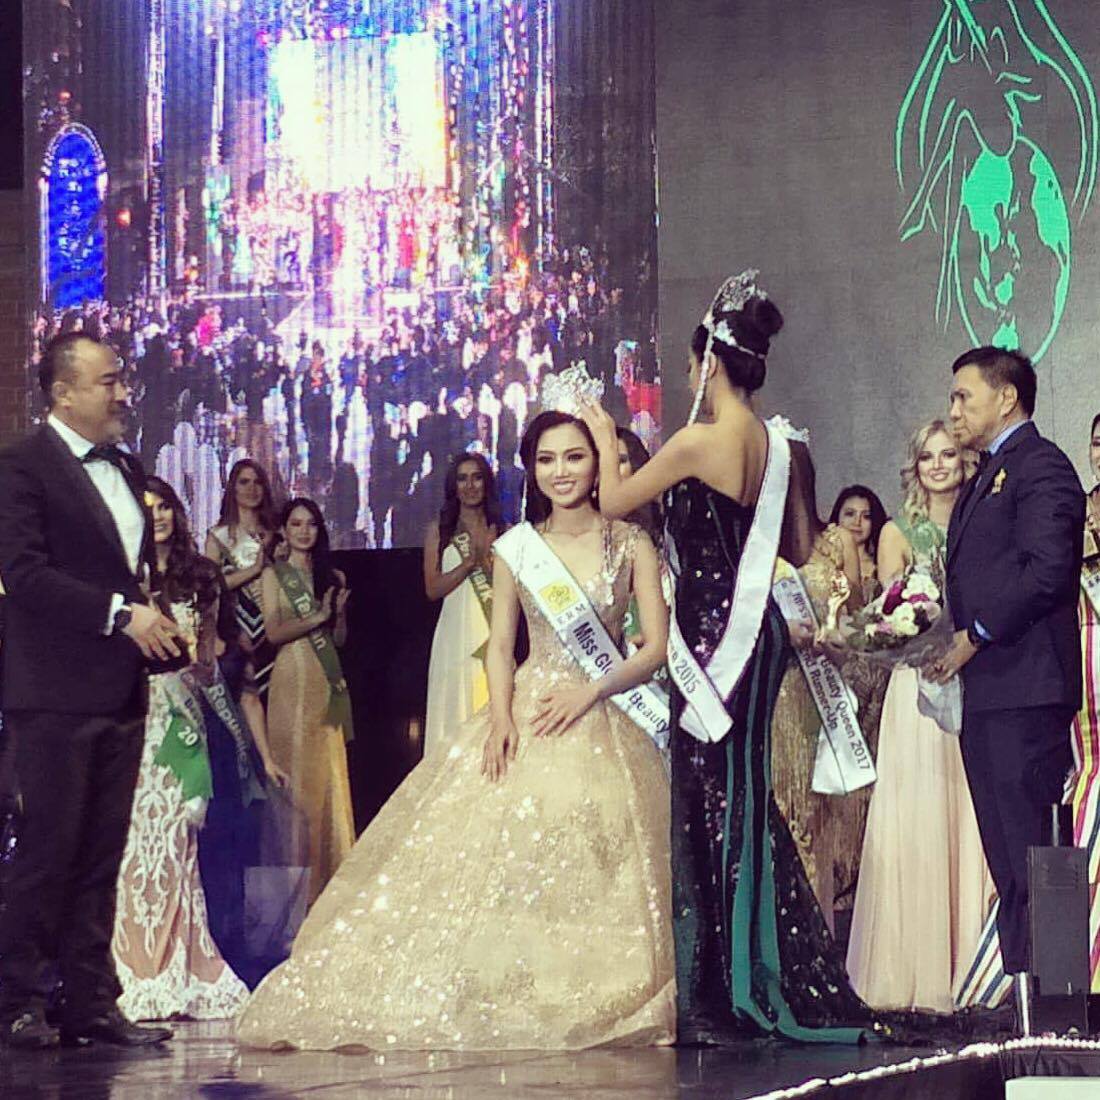 Năm thứ hai liên tiếp Việt Nam có đại diện giành chiến thắng tại Miss Global Beauty Queen 2017. Miss Global Beauty Queen 2015 là Vethaka Pethsuk đến từ Thái Lan trao vương miện cho Hoàng Thu Thảo. 